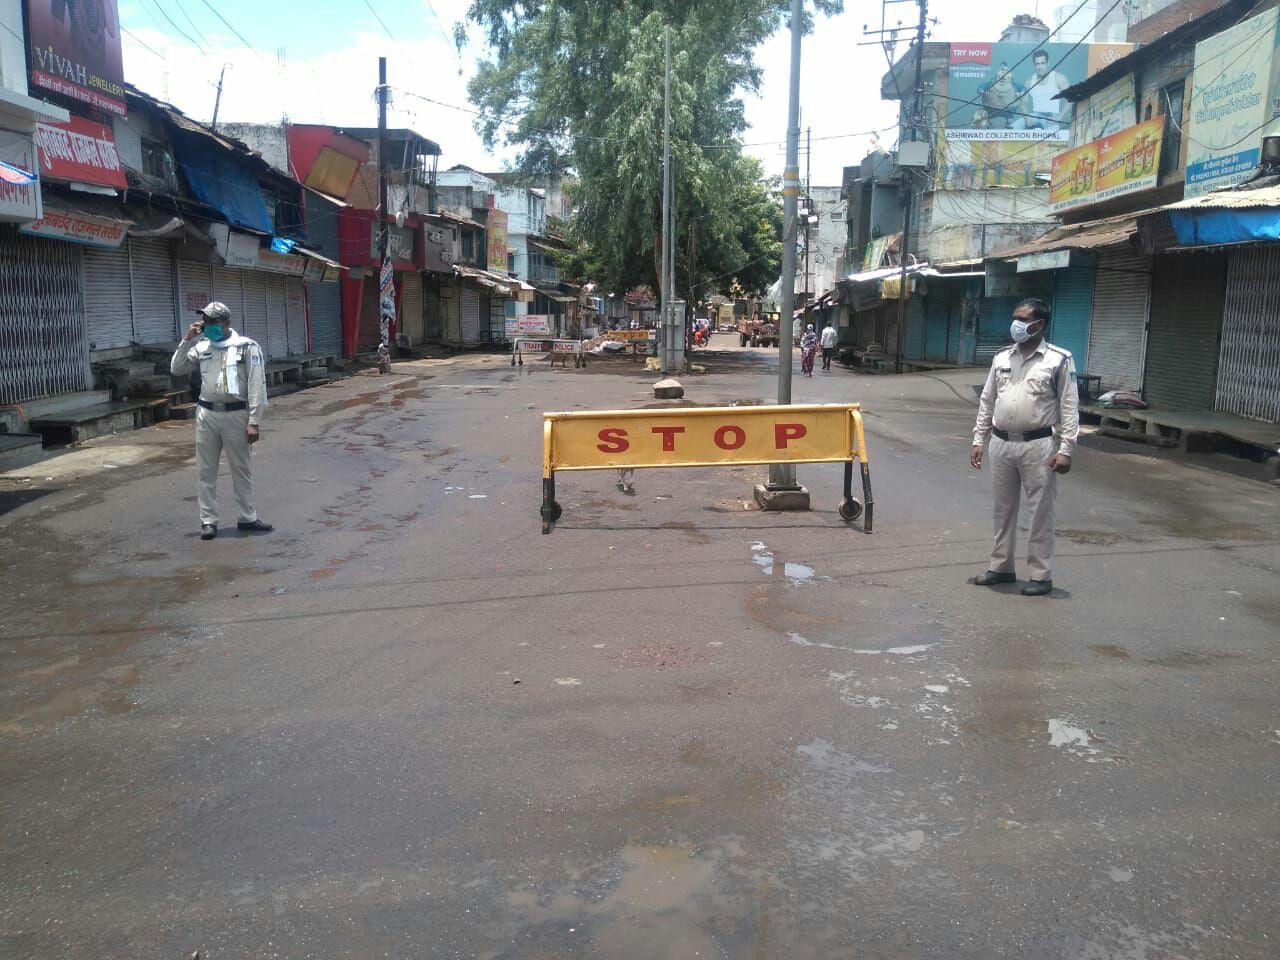  विदिशा। बड़ा बाजार इस तरह दिनभर रहा सुनसान, पुलिस तैनात।